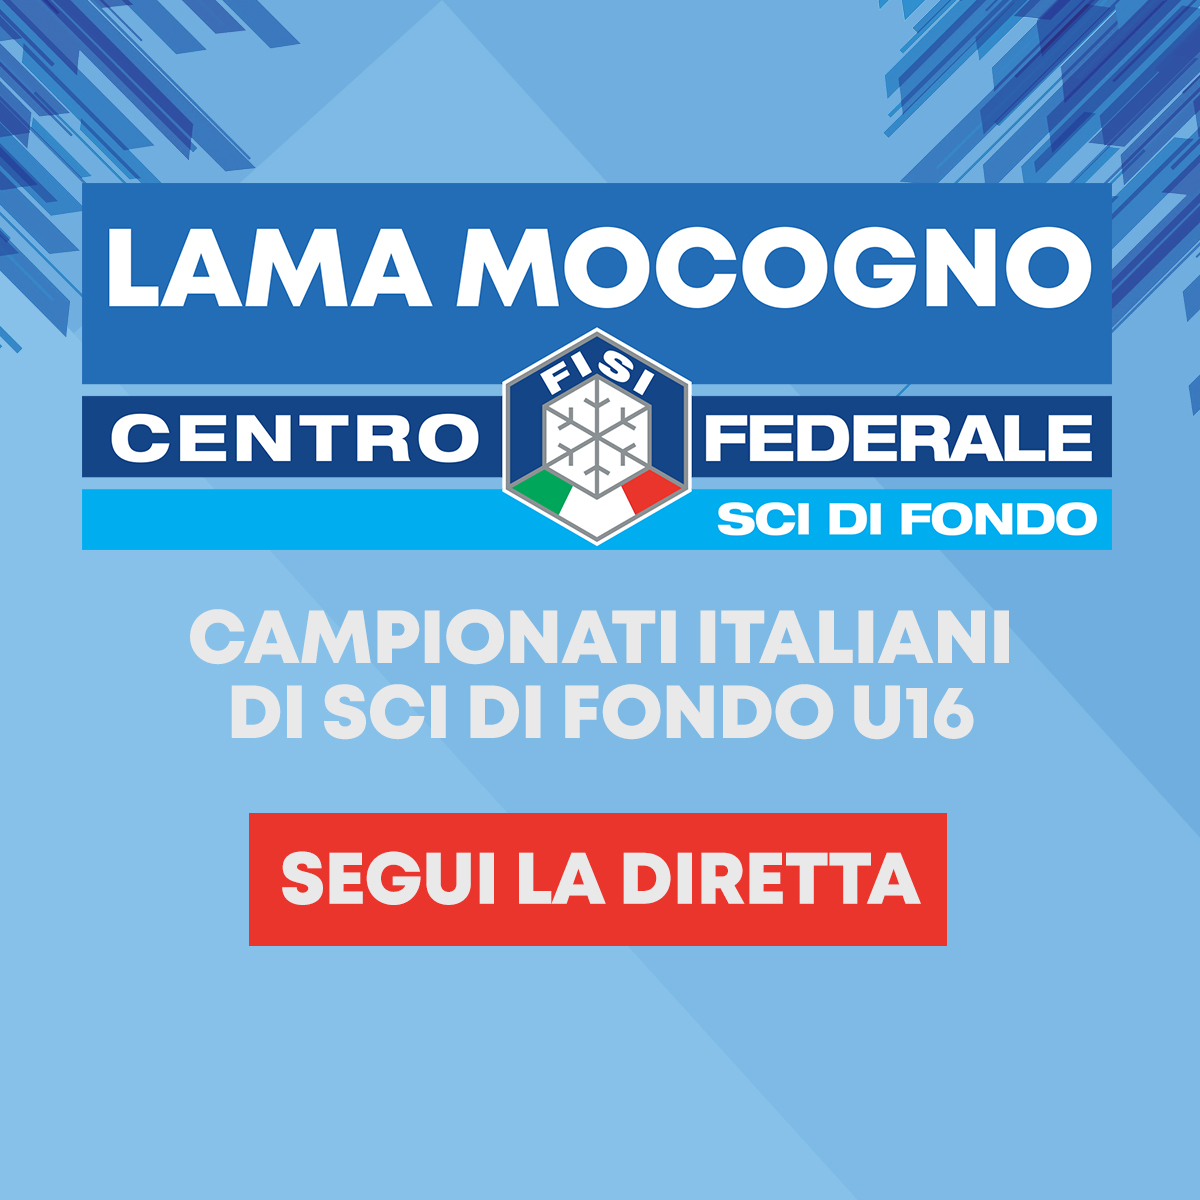 Diretta dei Campionati Italiani di Sci di Fondo - DAY 1